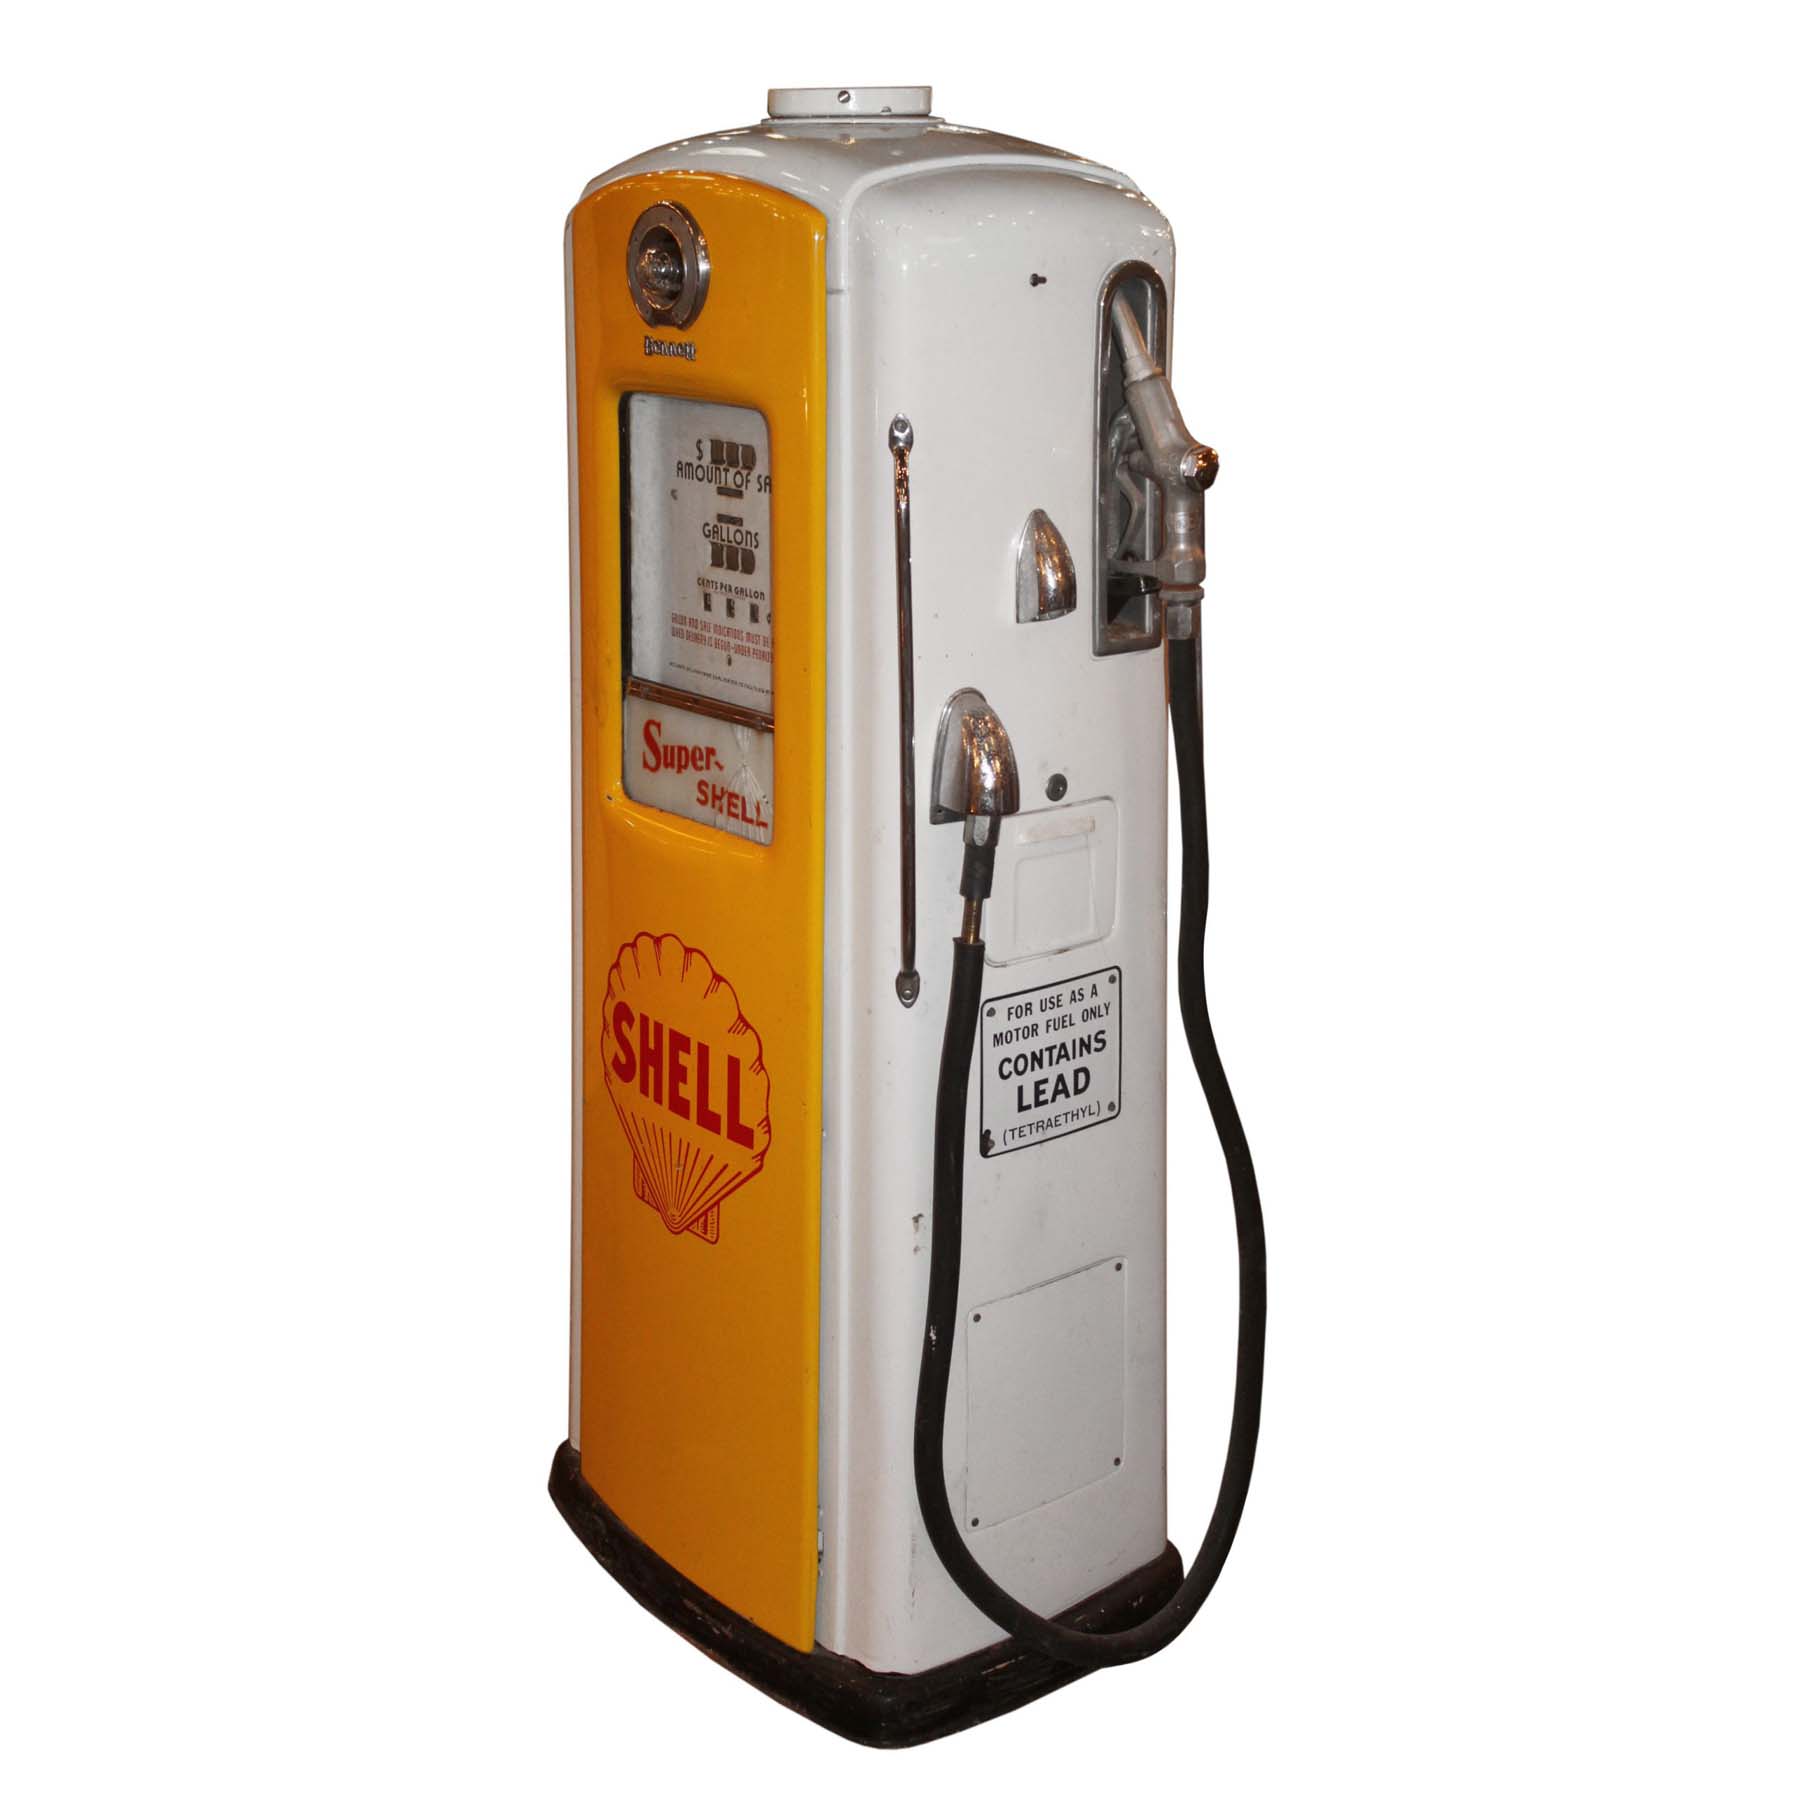 SOLD Vintage “Super Shell” Gas Station Pump-67042